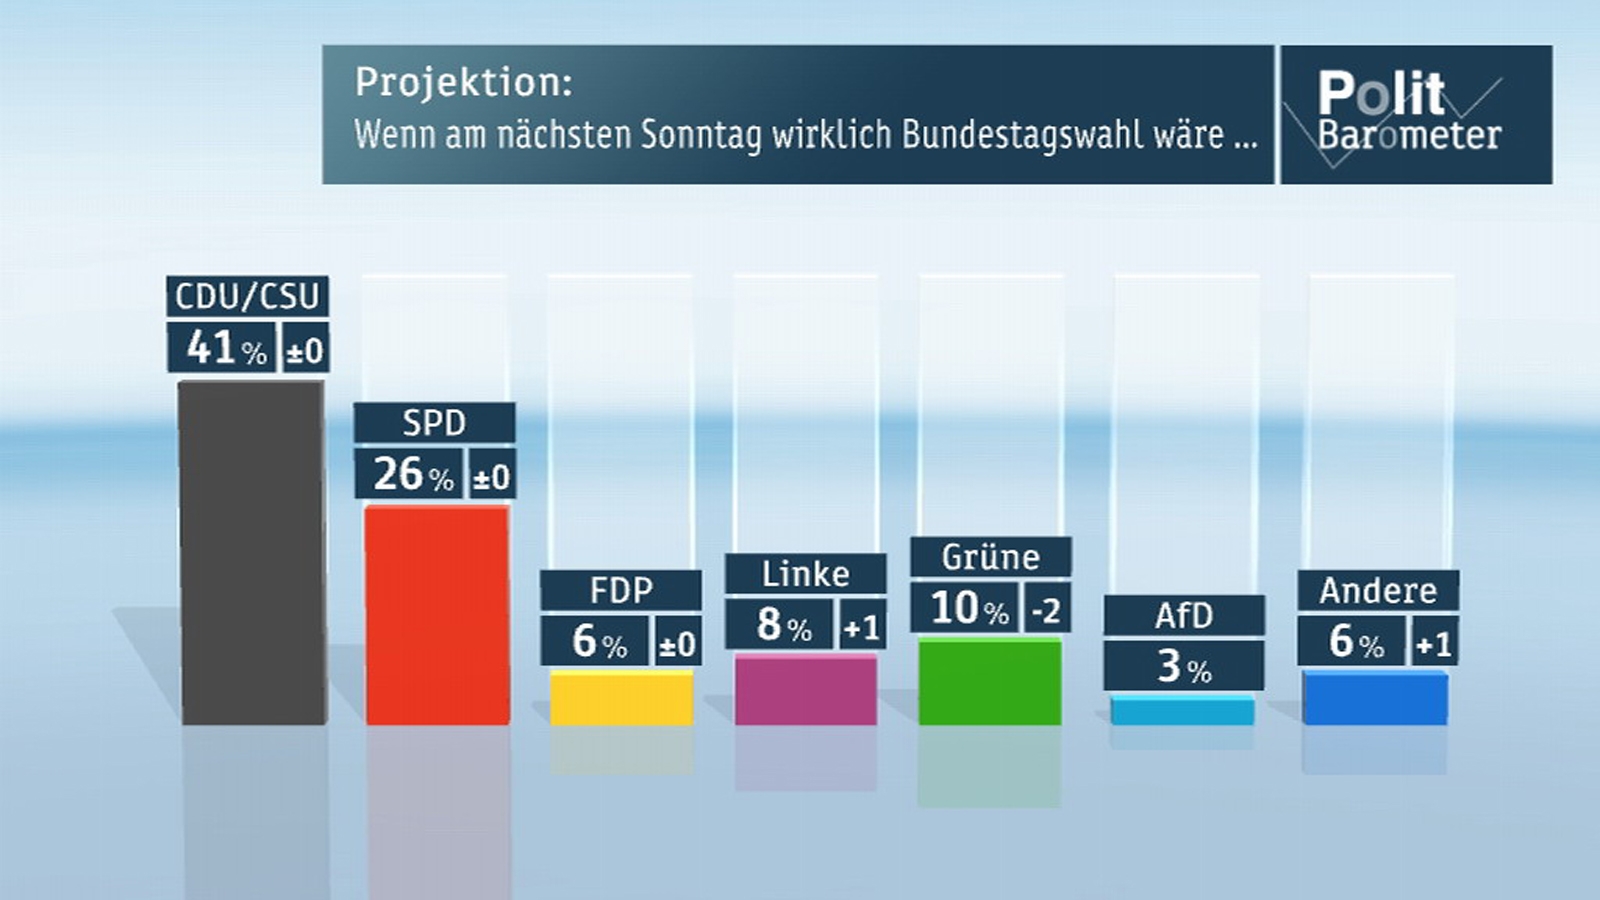 ZDF-Polibarometer vom 05. September 2013: Wenn am nächsten Sonntag Bundestagswahl wäre, käme die CDU/CSU unverändert auf 41 Prozent und die SPD weiterhin auf 26 Prozent, die FDP bliebe bei 6 Prozent, während die Linke auf 8 Prozent (plus 1) zulegen könnte